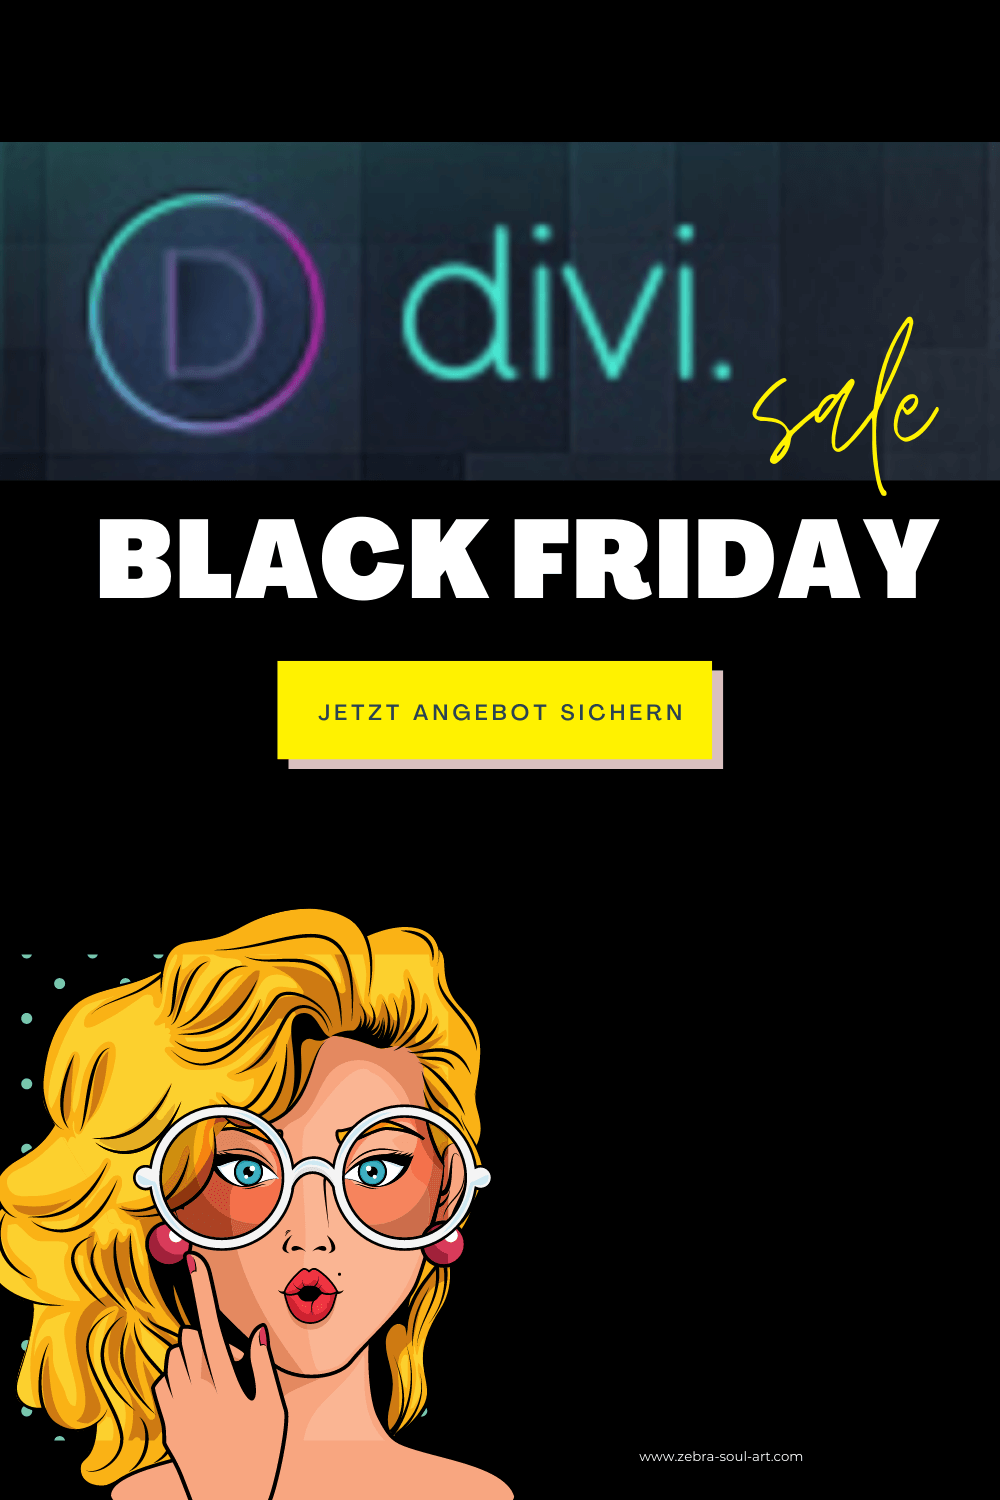 divi black friday angebot für mein online unternehmen